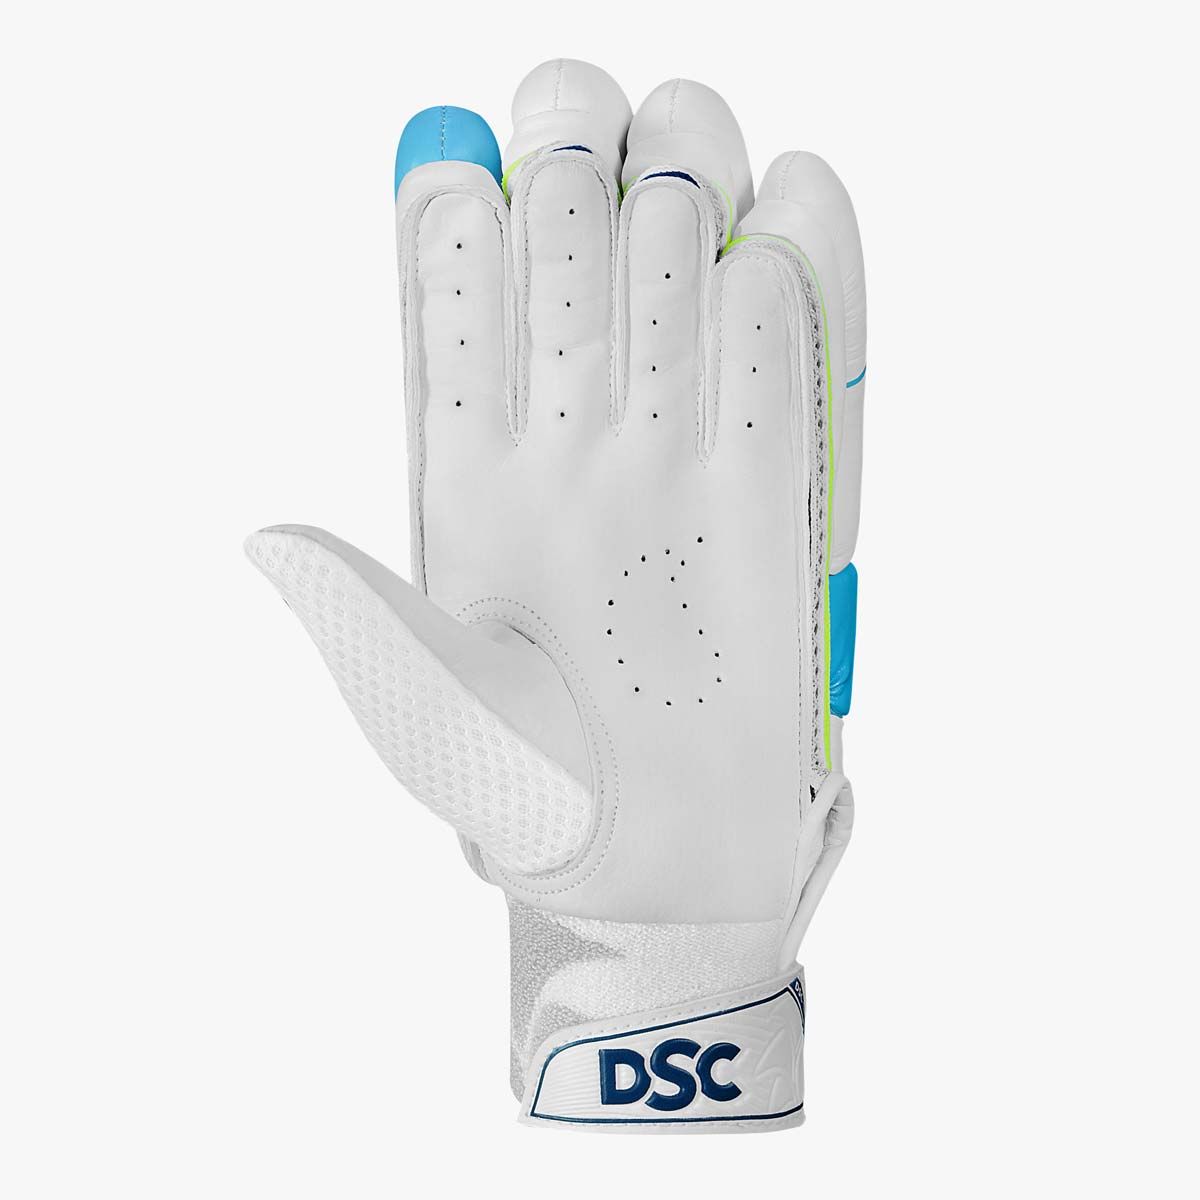 DSC Condor Glider Batting Gloves